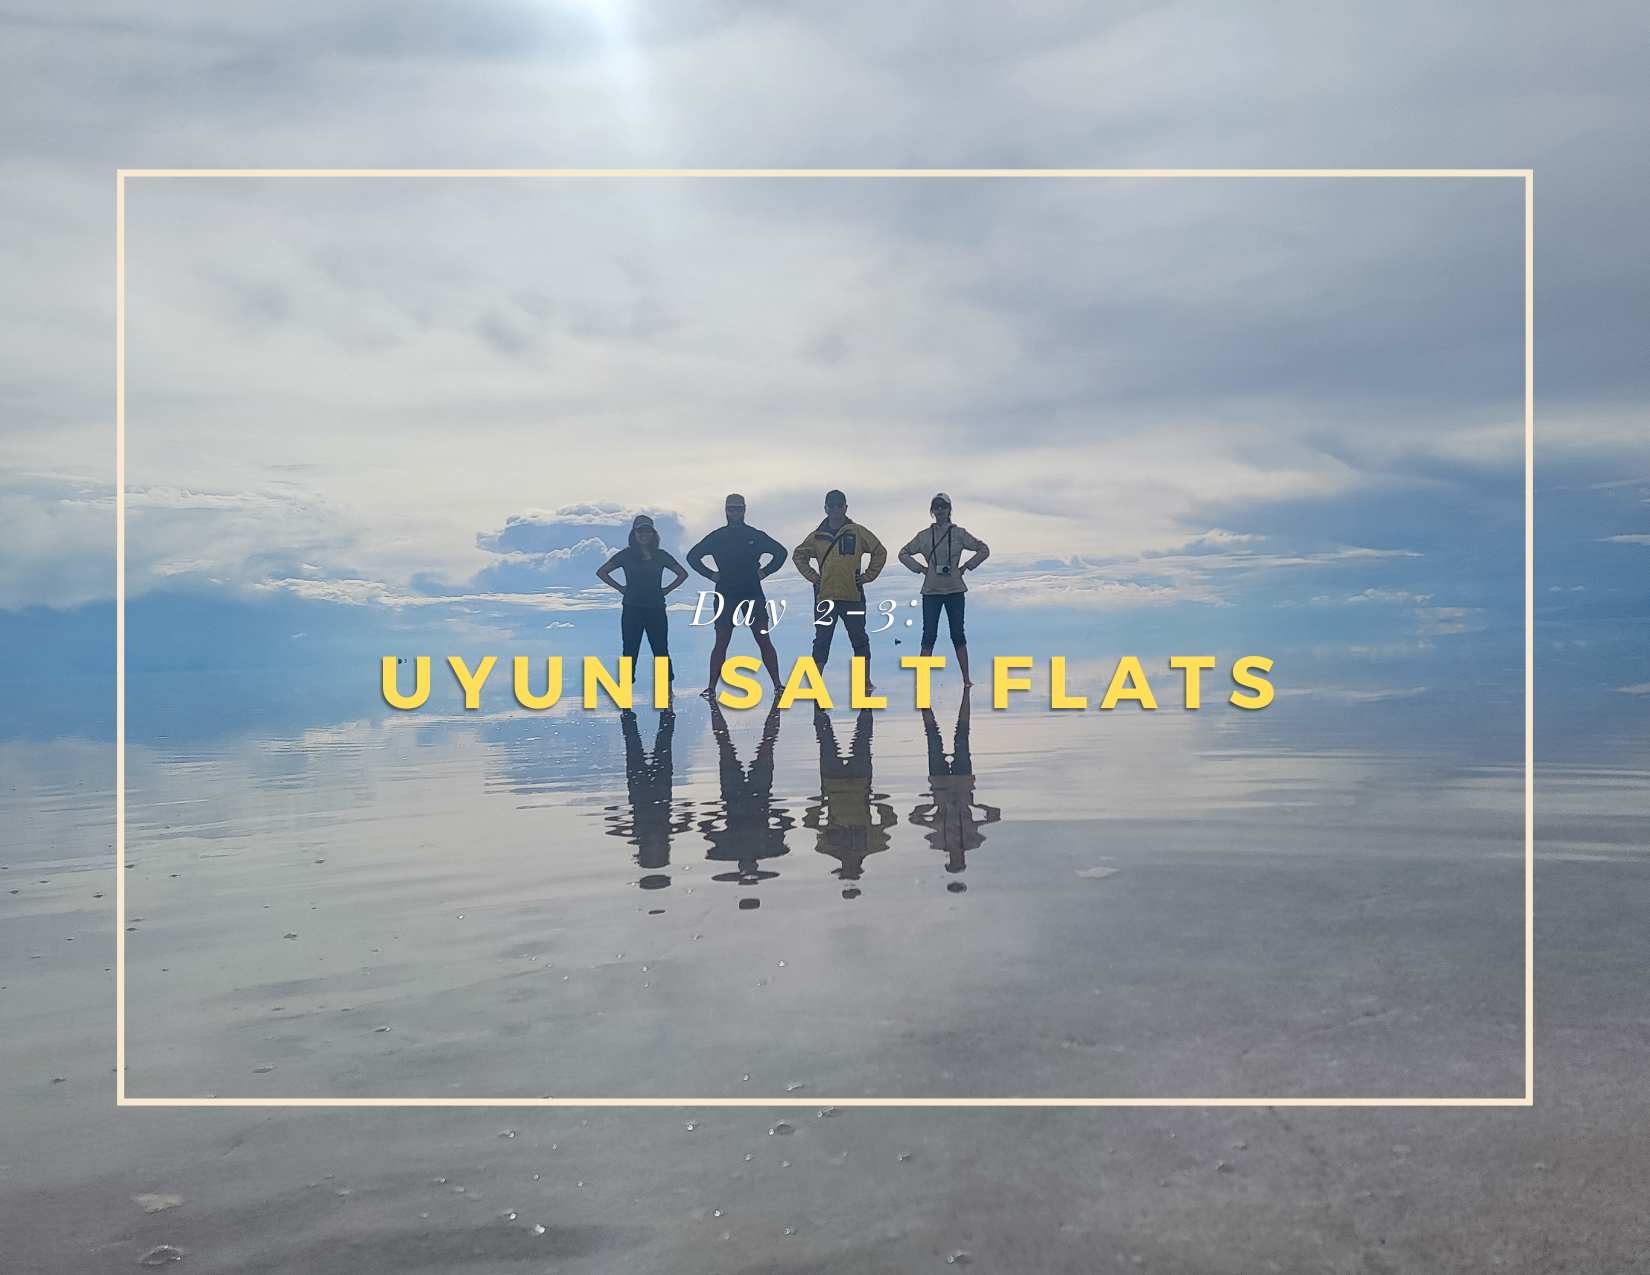 Quick Trip to Uyuni Salt Flats